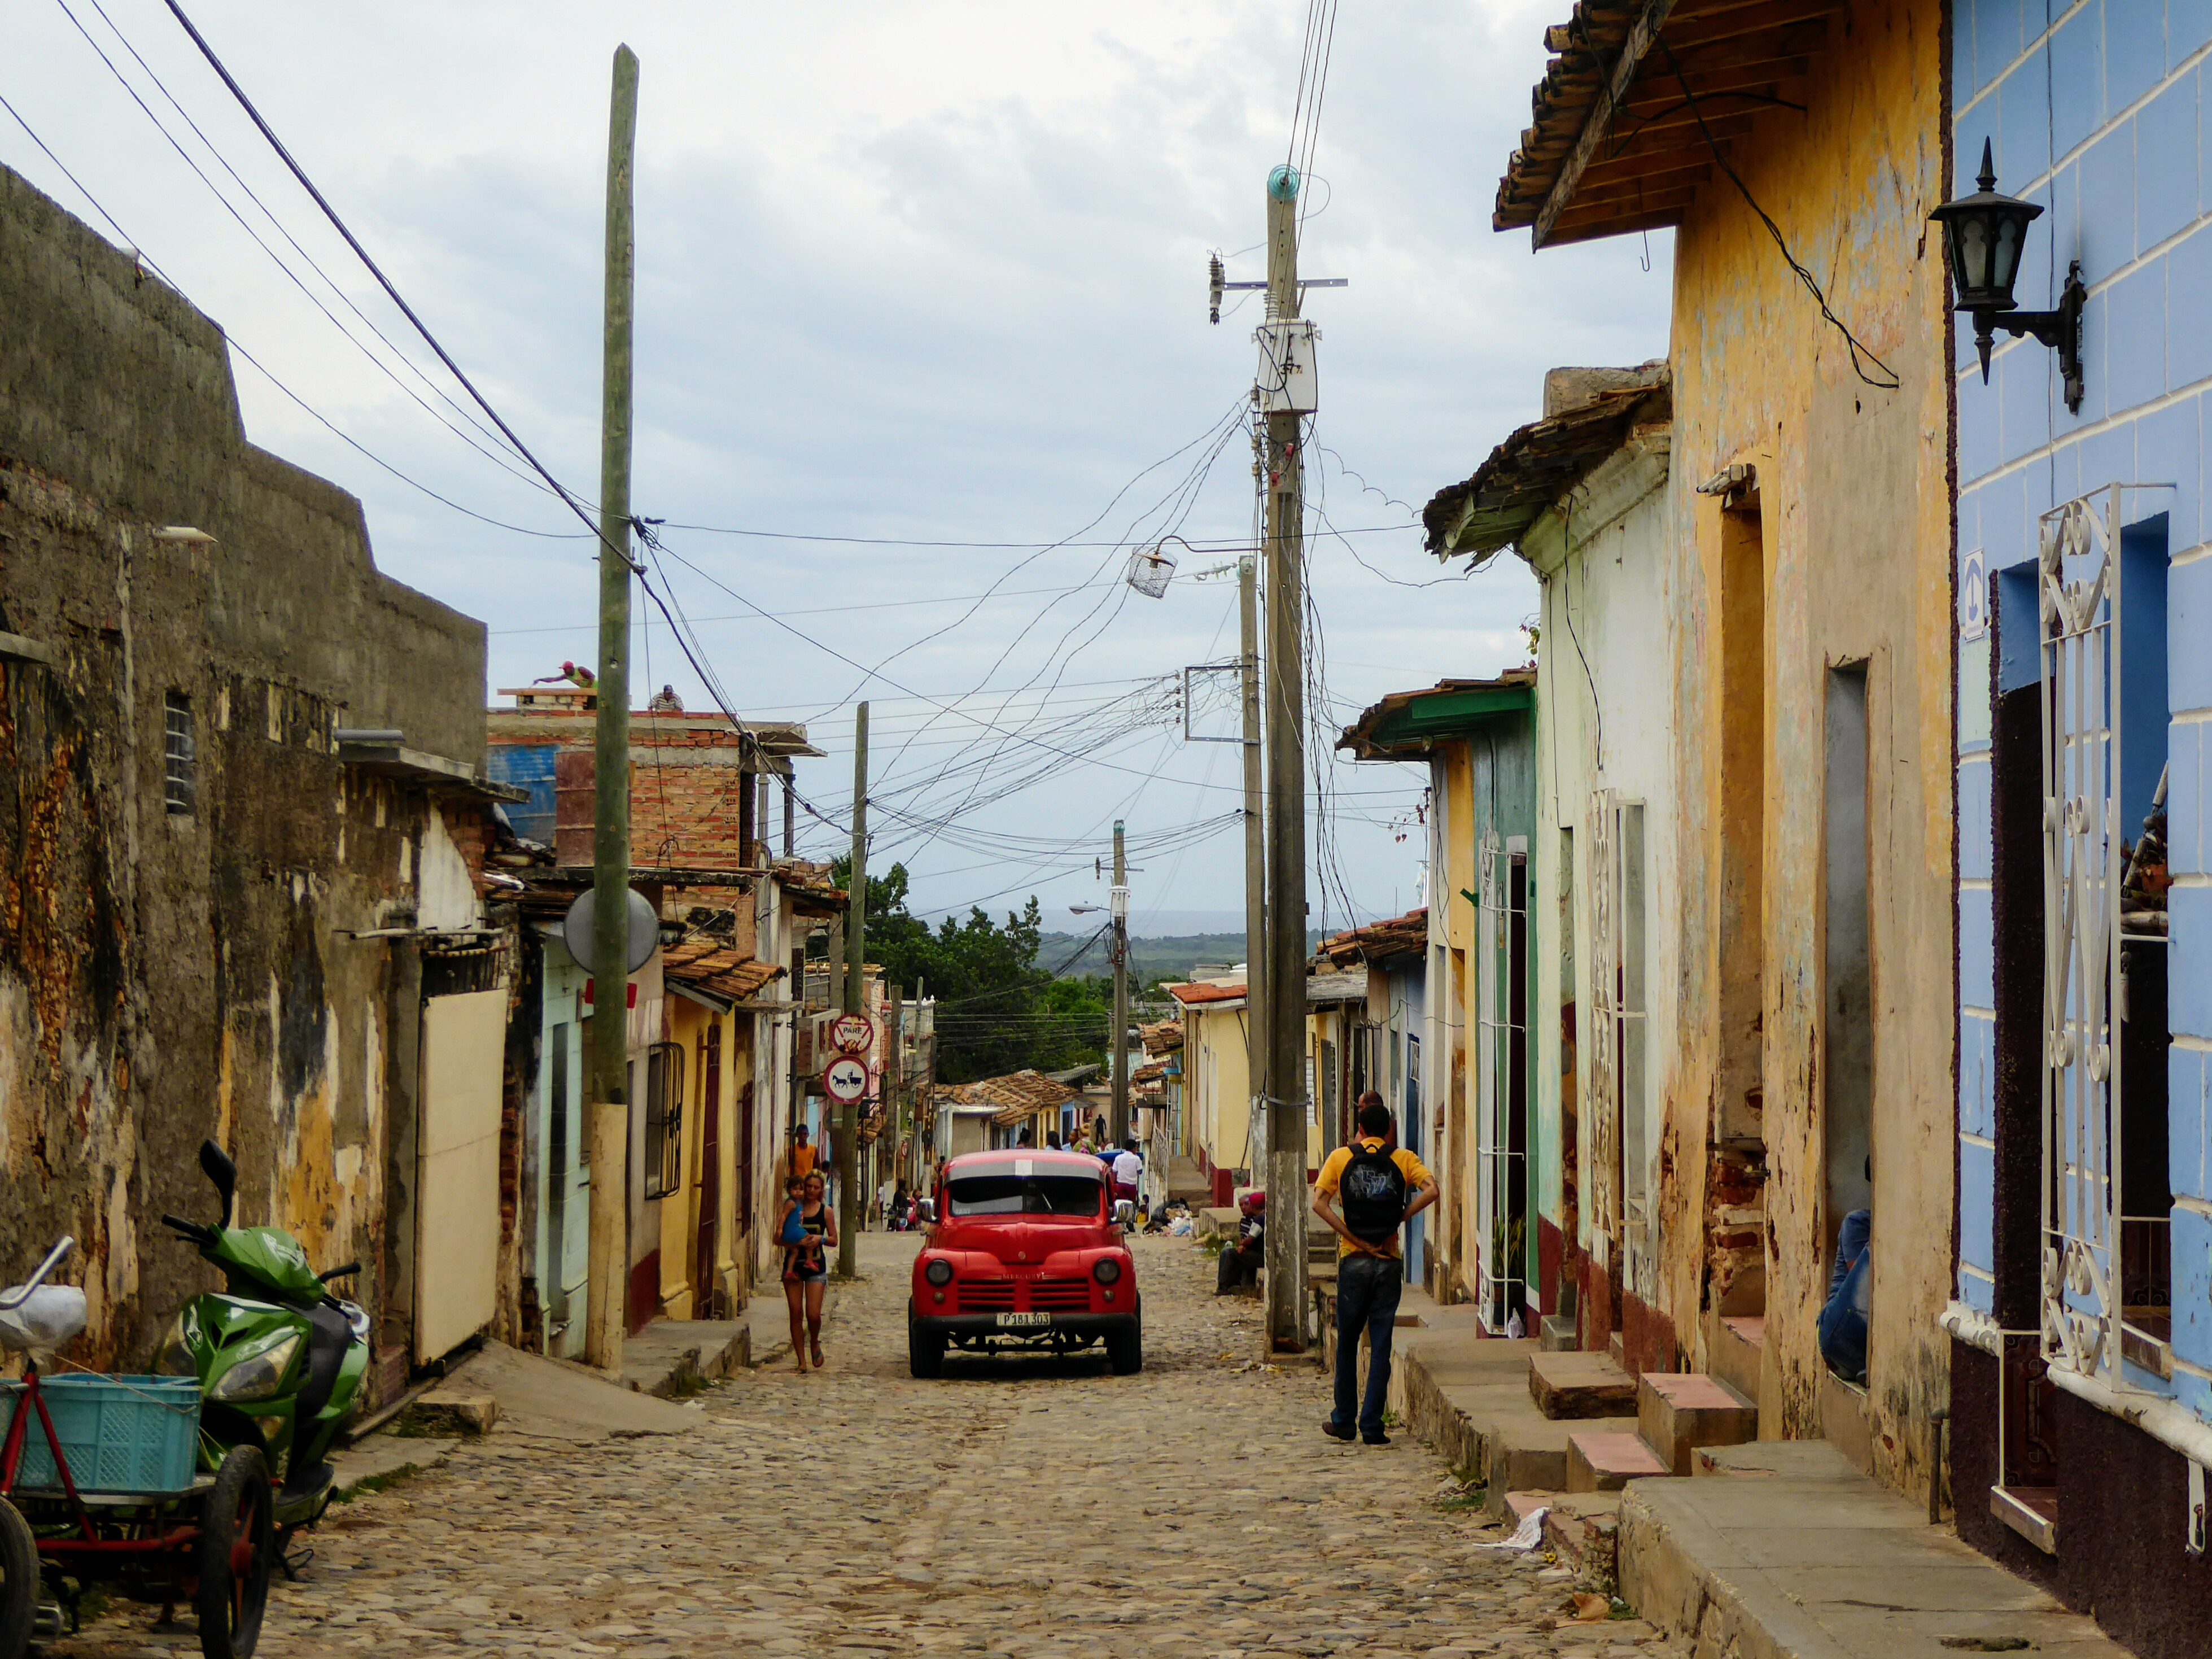 Wandeling door kleurrijk Trinidad, Cuba